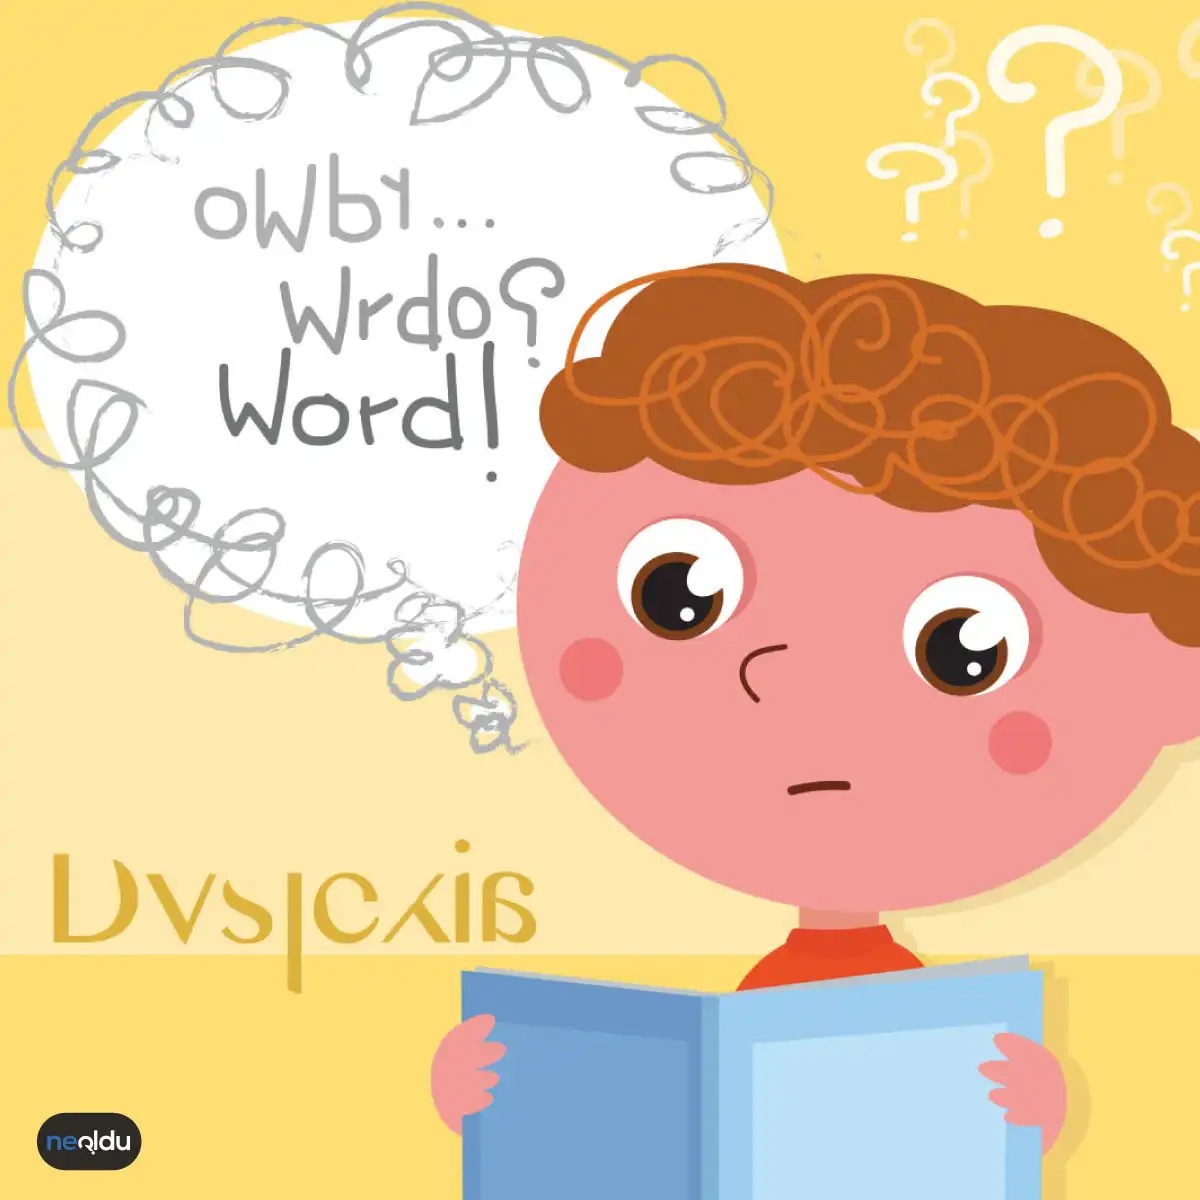 Disleksi